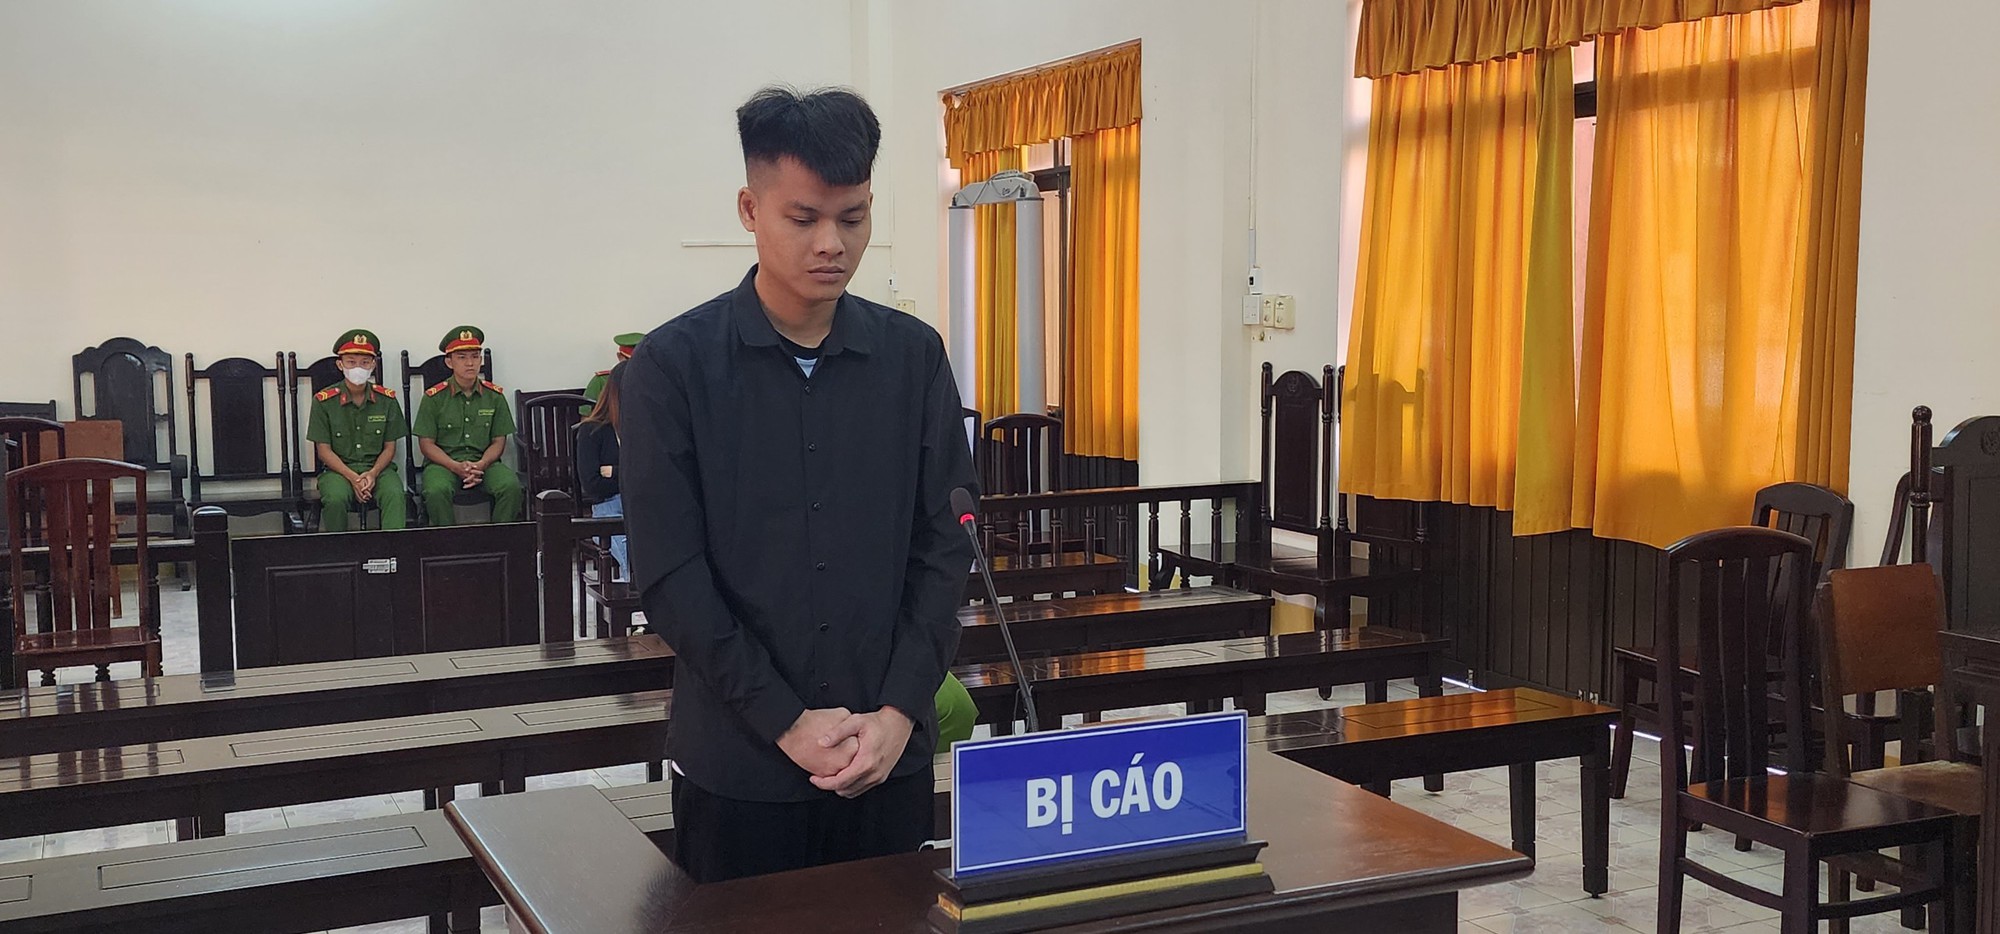 Kiên Giang: Lãnh 9 năm tù vì mua súng phòng thân và tàng trữ ma tuý - Ảnh 1.